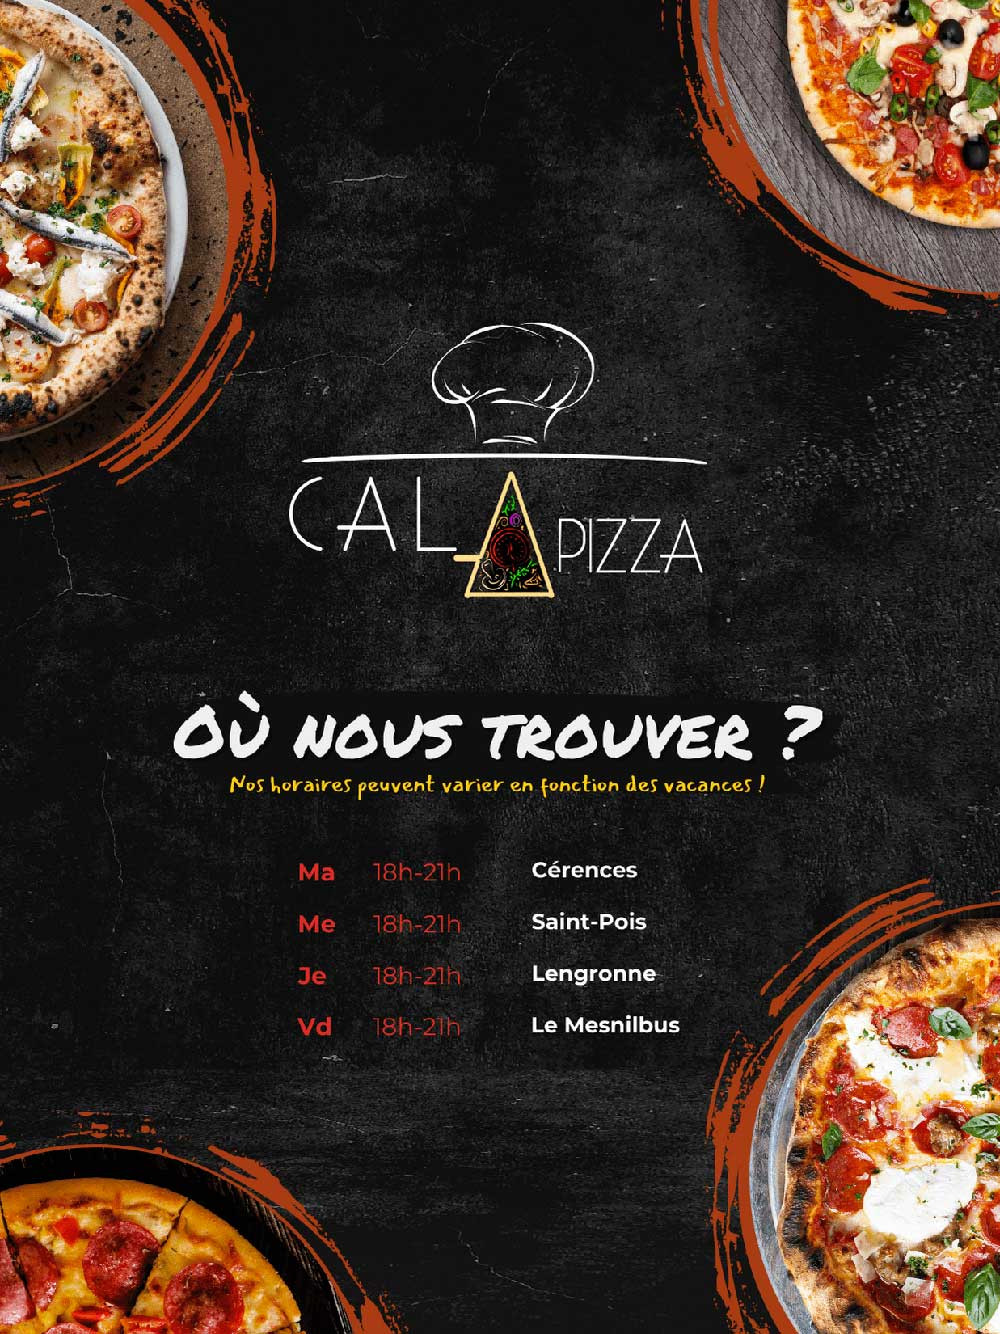 Cala Pizza - Lieux et horaires